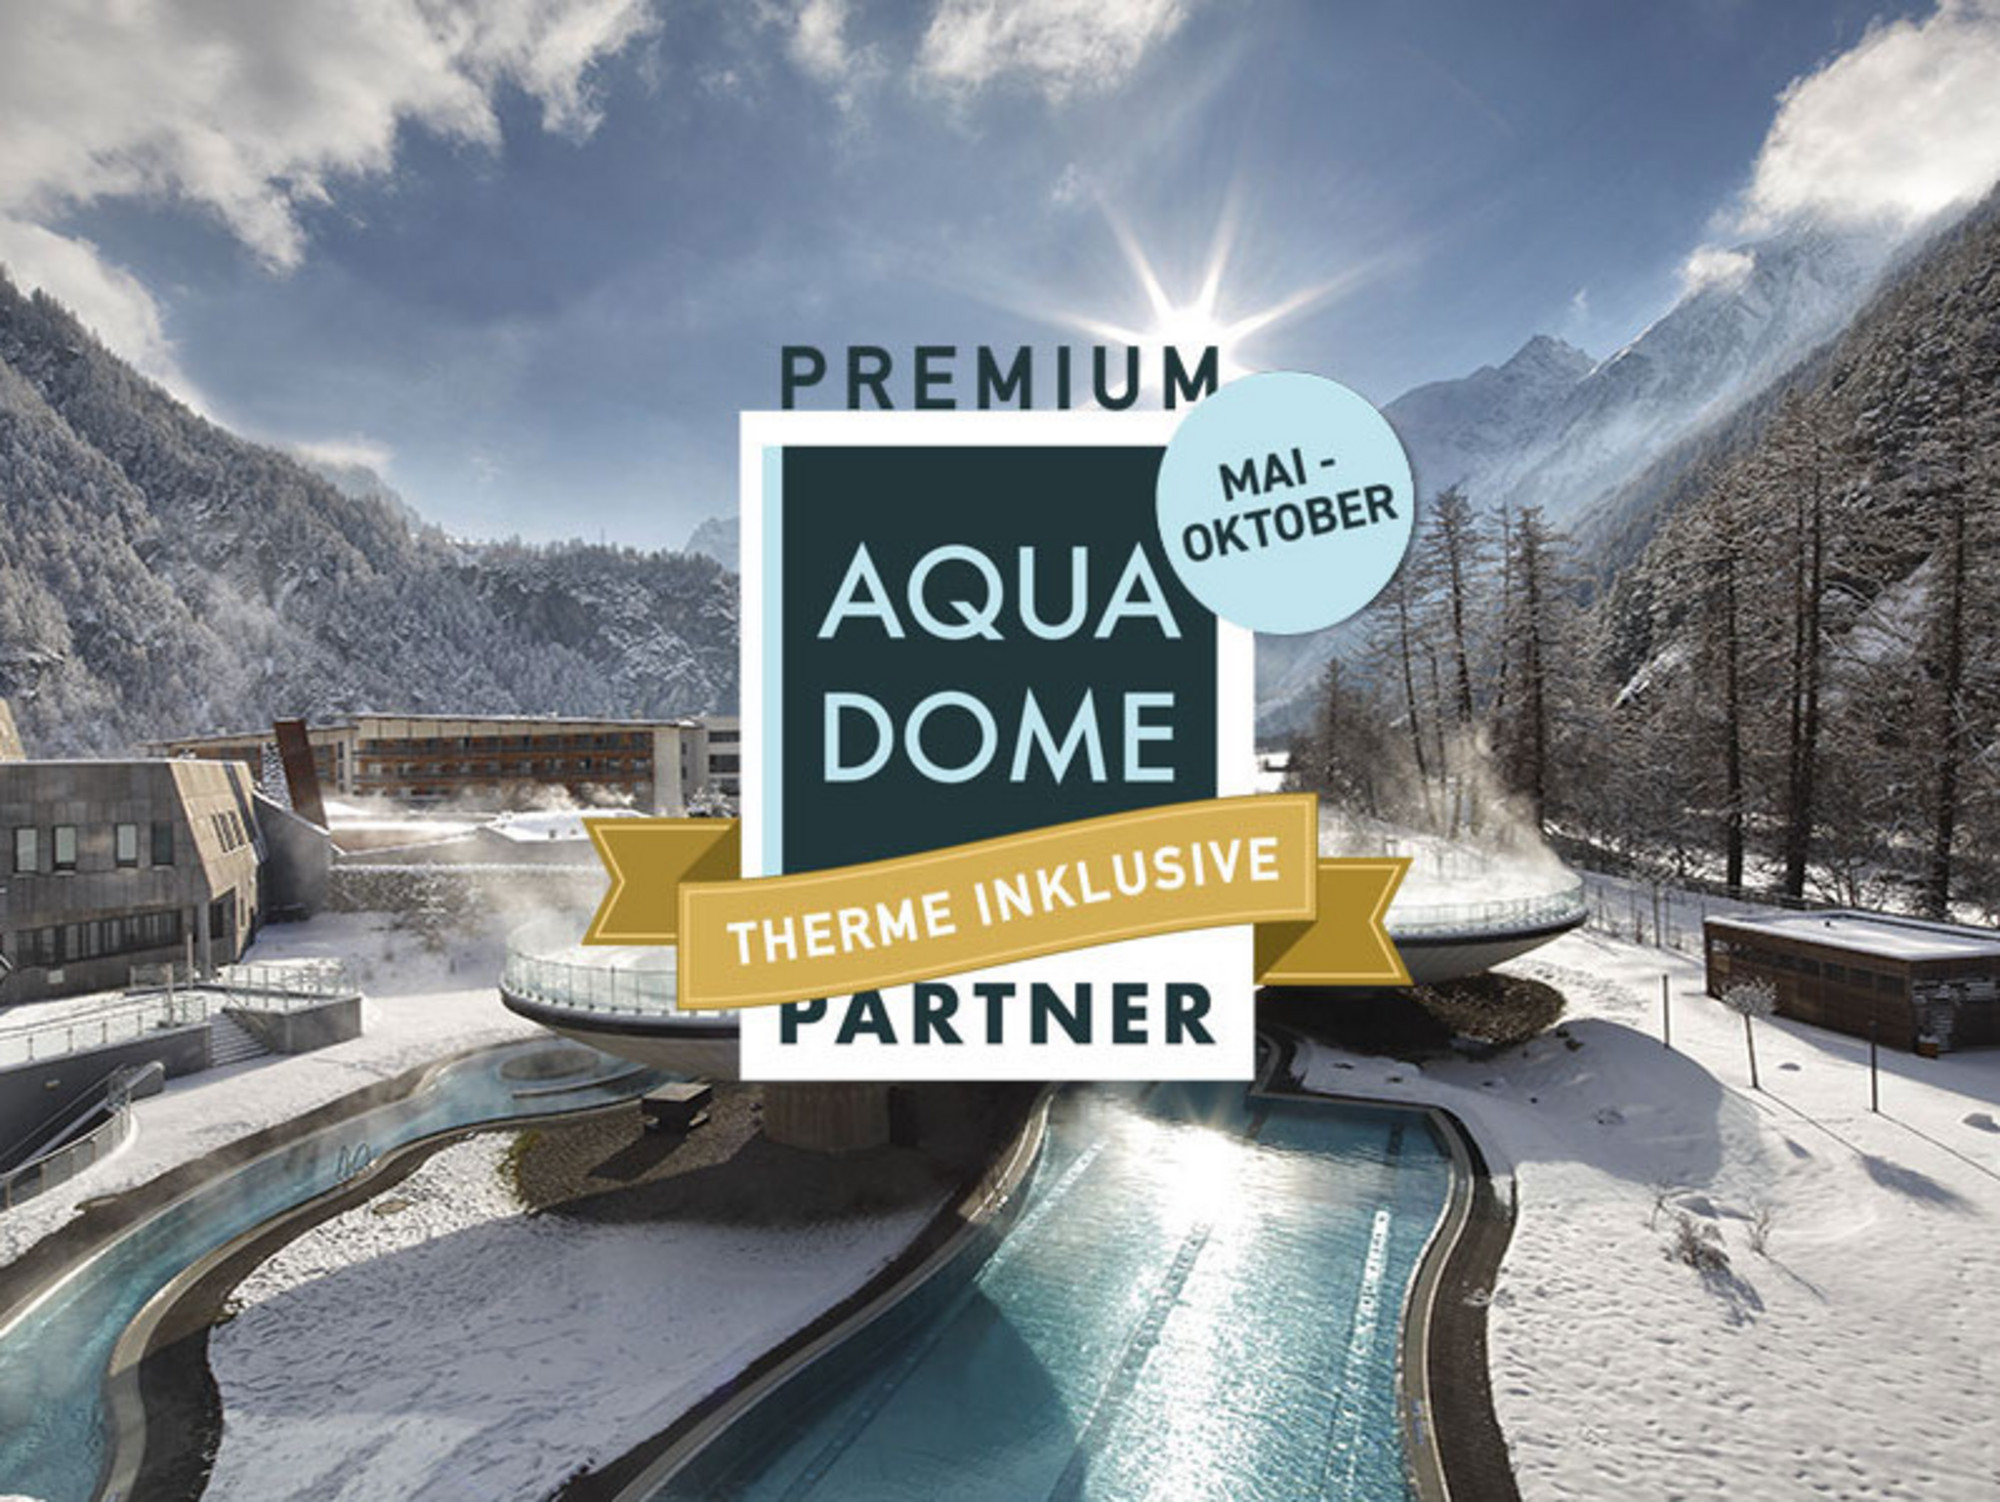 Aqua Dome Premium Partner